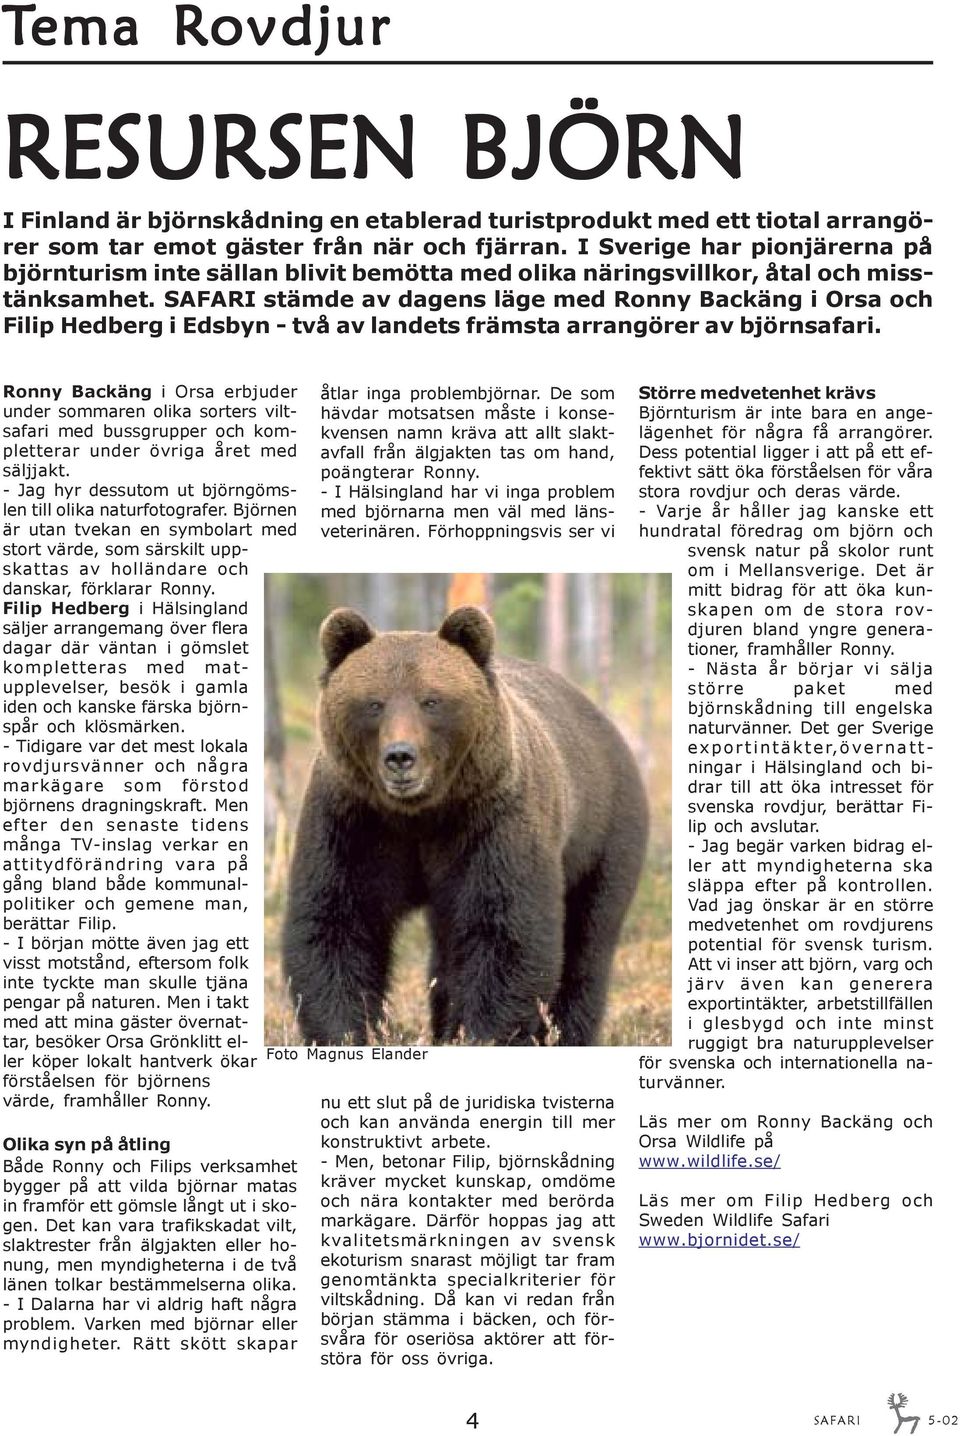 SAFARI stämde av dagens läge med Ronny Backäng i Orsa och Filip Hedberg i Edsbyn - två av landets främsta arrangörer av björnsafari.